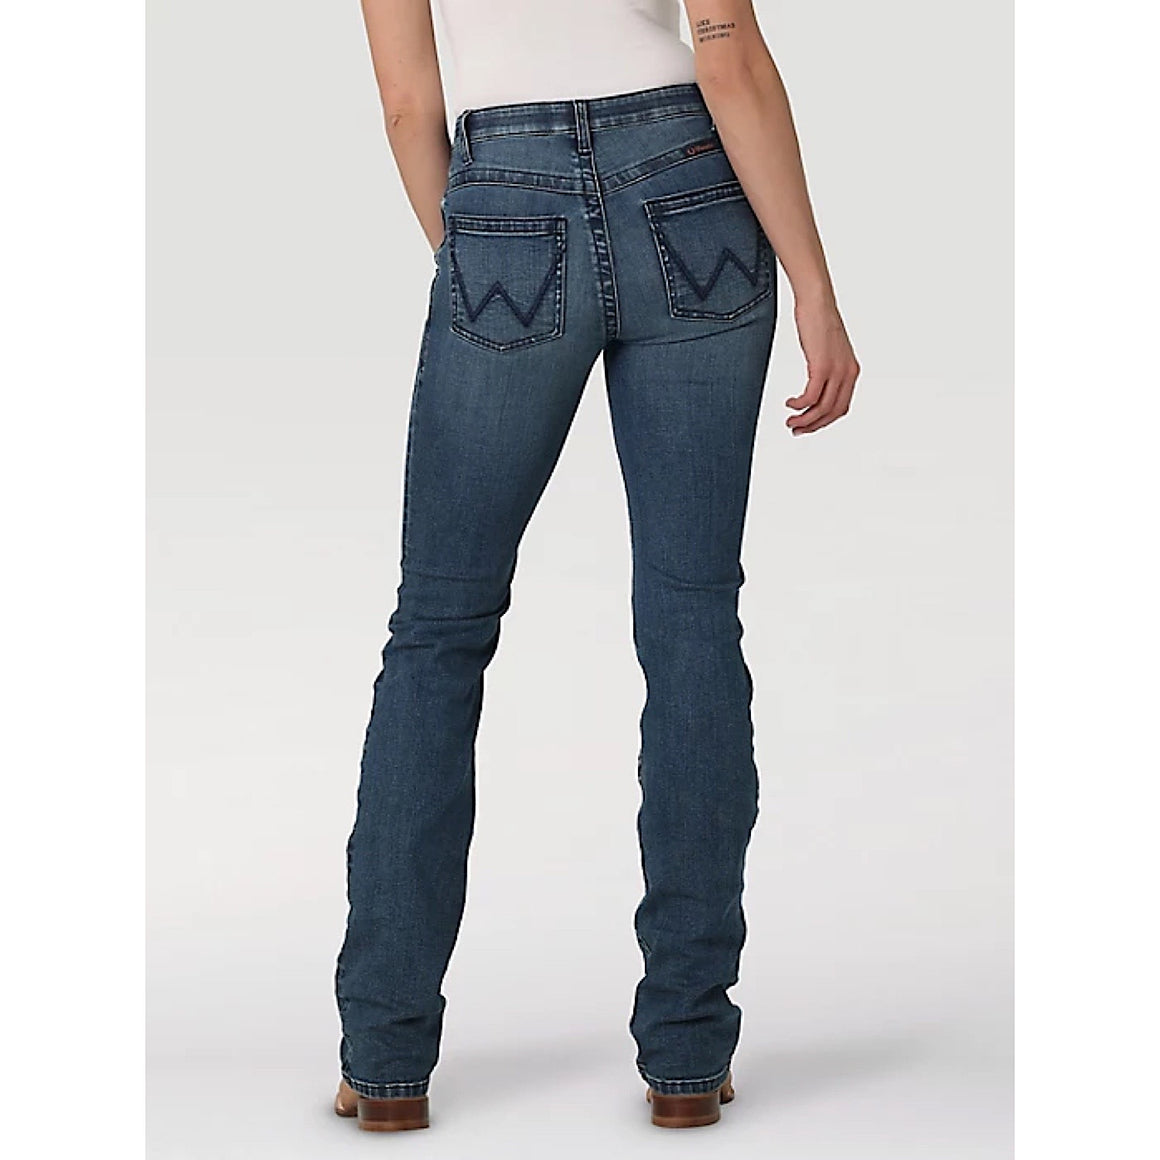 Buy Wrangler Womens Jeans